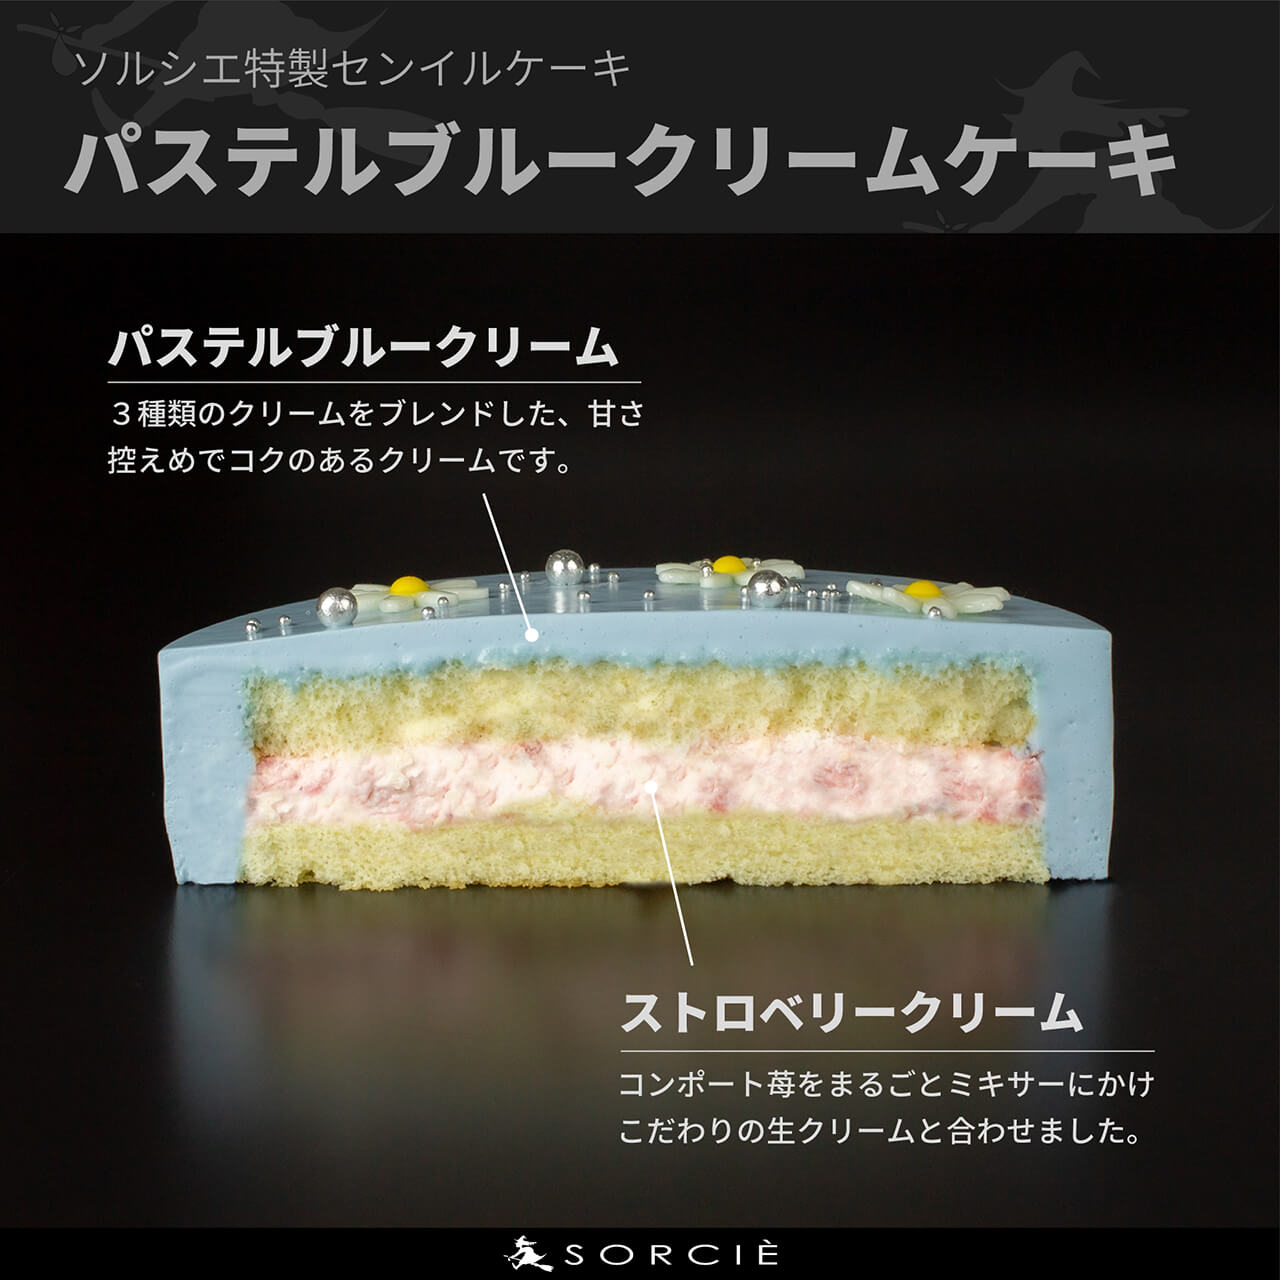 【宅配】センイルケーキ 4号サイズ 13.5cm 2人～4人分 約270g 【天然色素のみ使用】